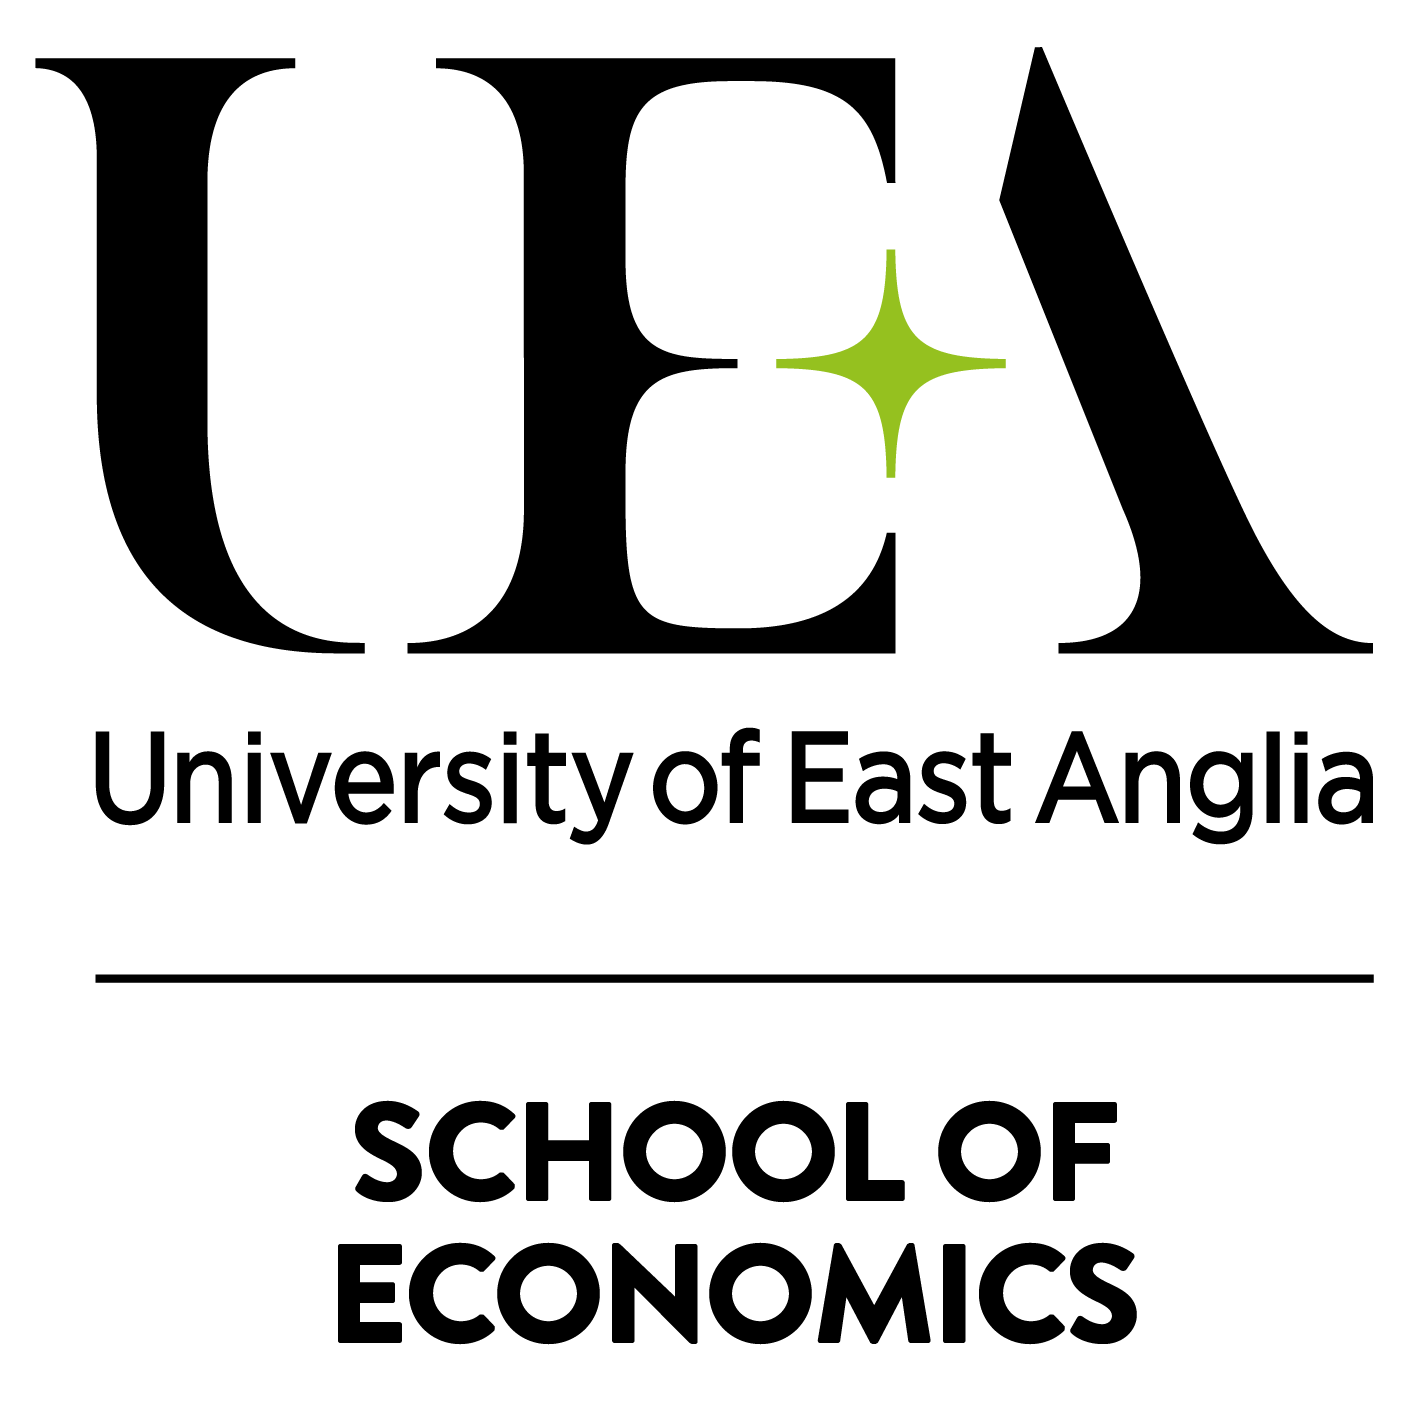 UEA School of Economics logo